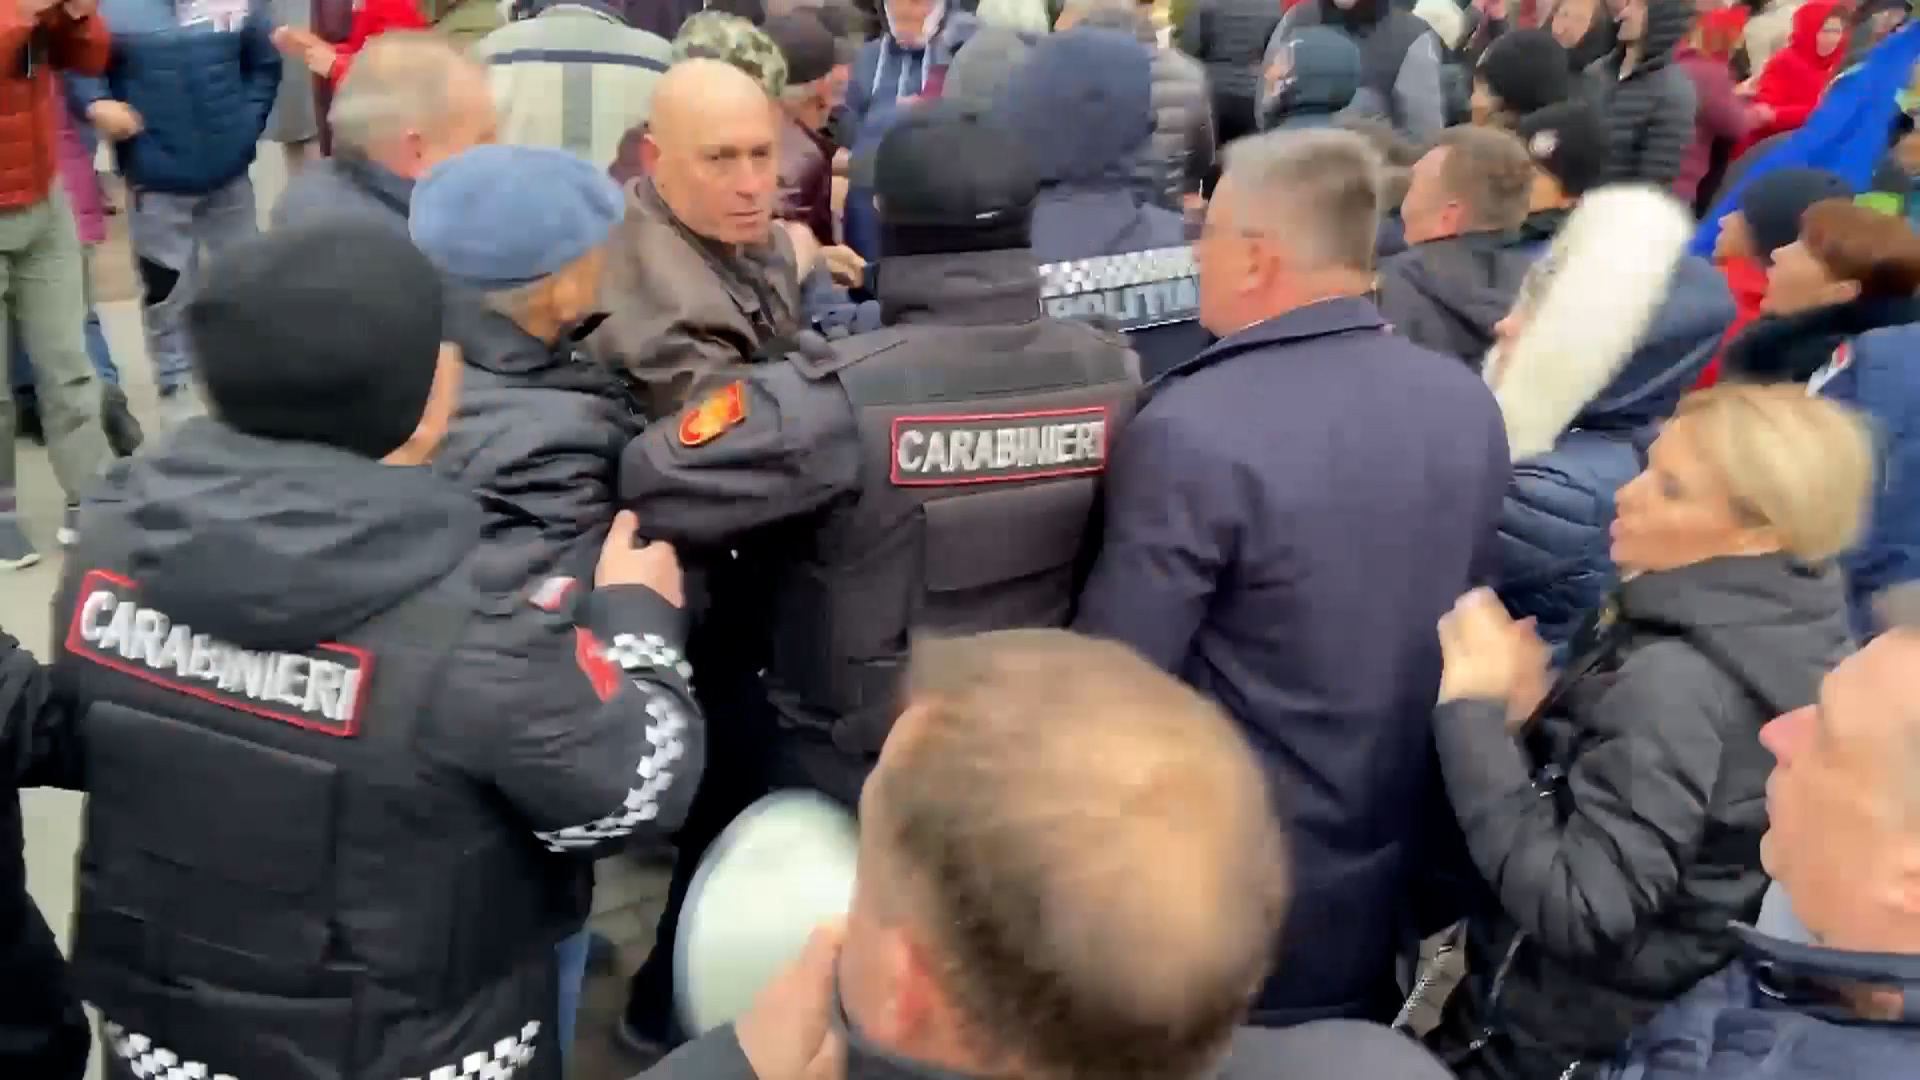 (ВИДЕО) Столкновения у здания парламента. На мэра Оргеева напал контр-протестующий